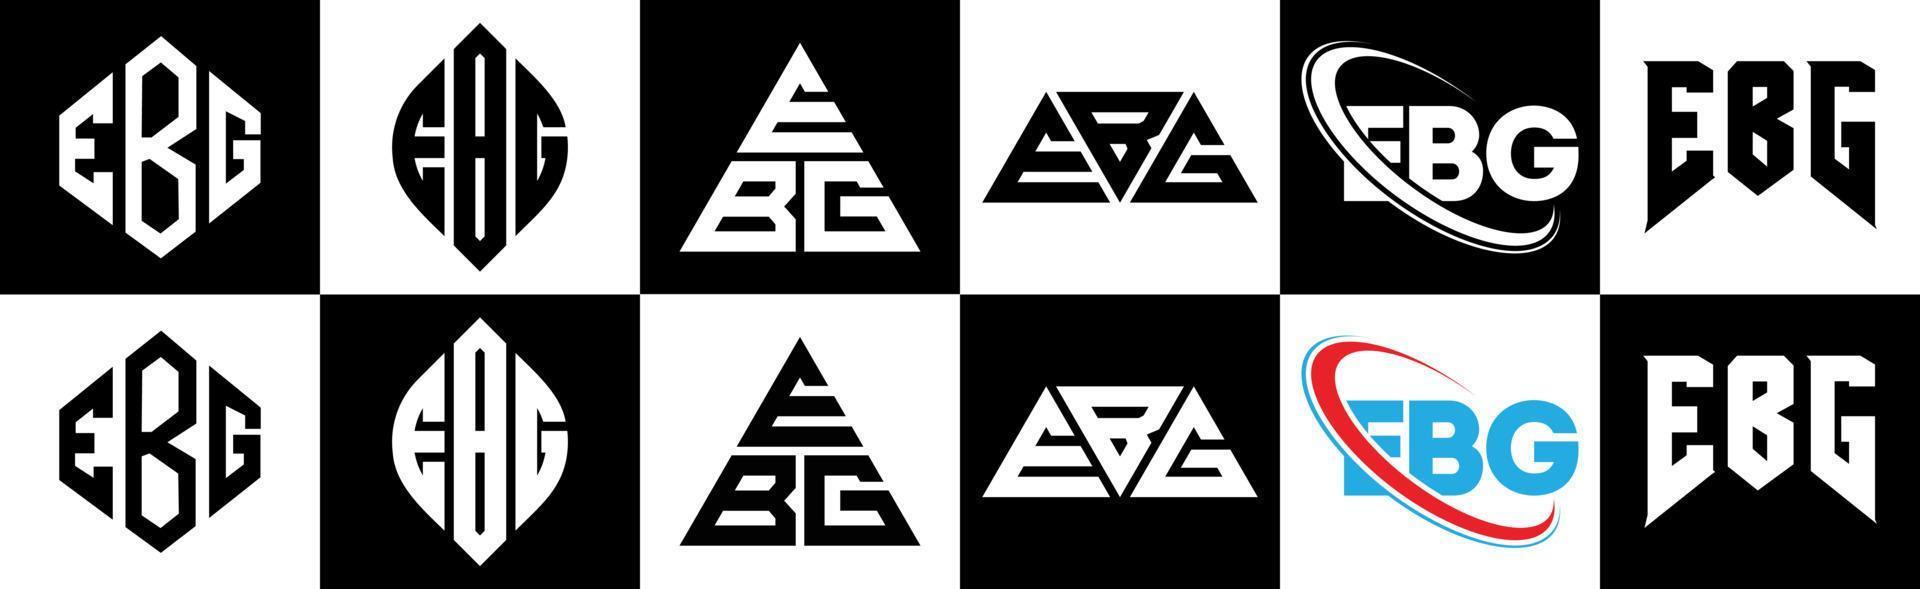 diseño de logotipo de letra ebg en seis estilos. polígono ebg, círculo, triángulo, hexágono, estilo plano y simple con logotipo de letra de variación de color blanco y negro en una mesa de trabajo. logotipo minimalista y clásico de ebg vector